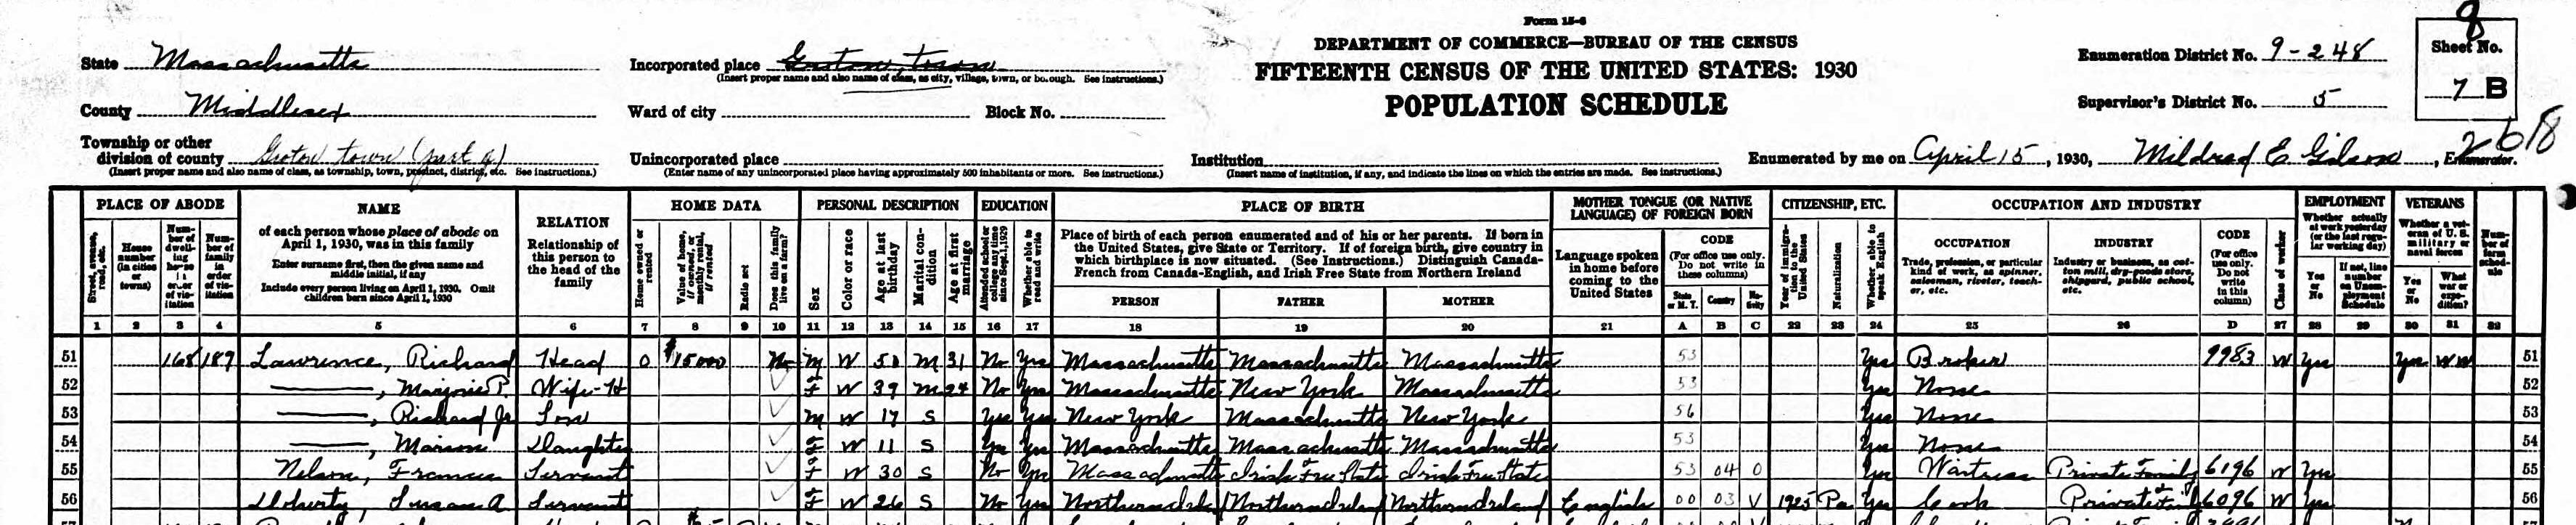 1930 Census detail 1